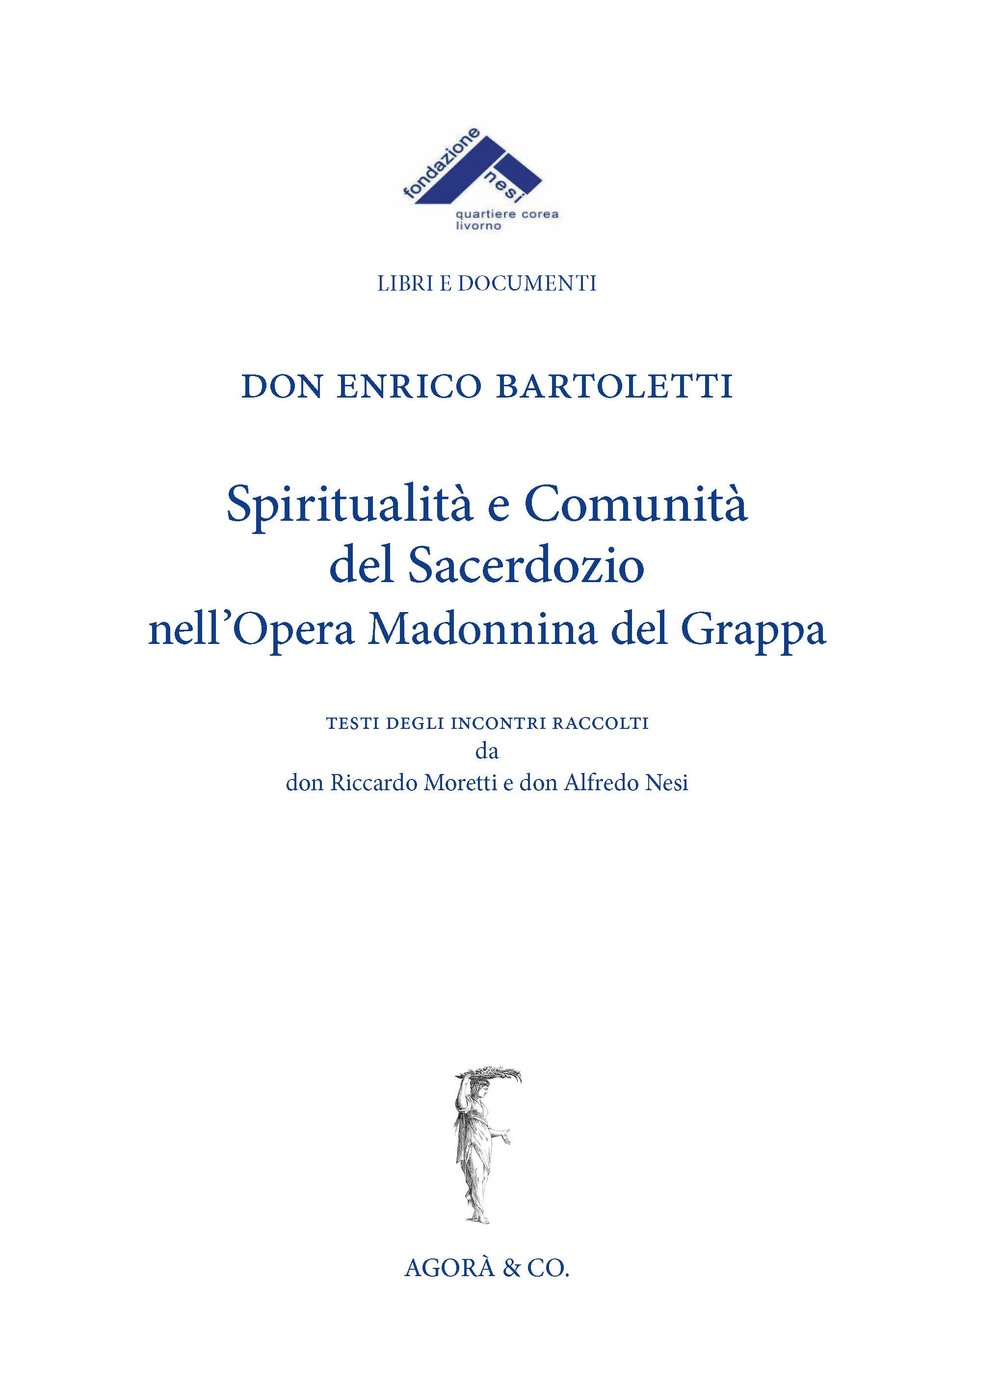 Spiritualità e comunità del sacerdozio nell’Opera Madonnina del Grappa